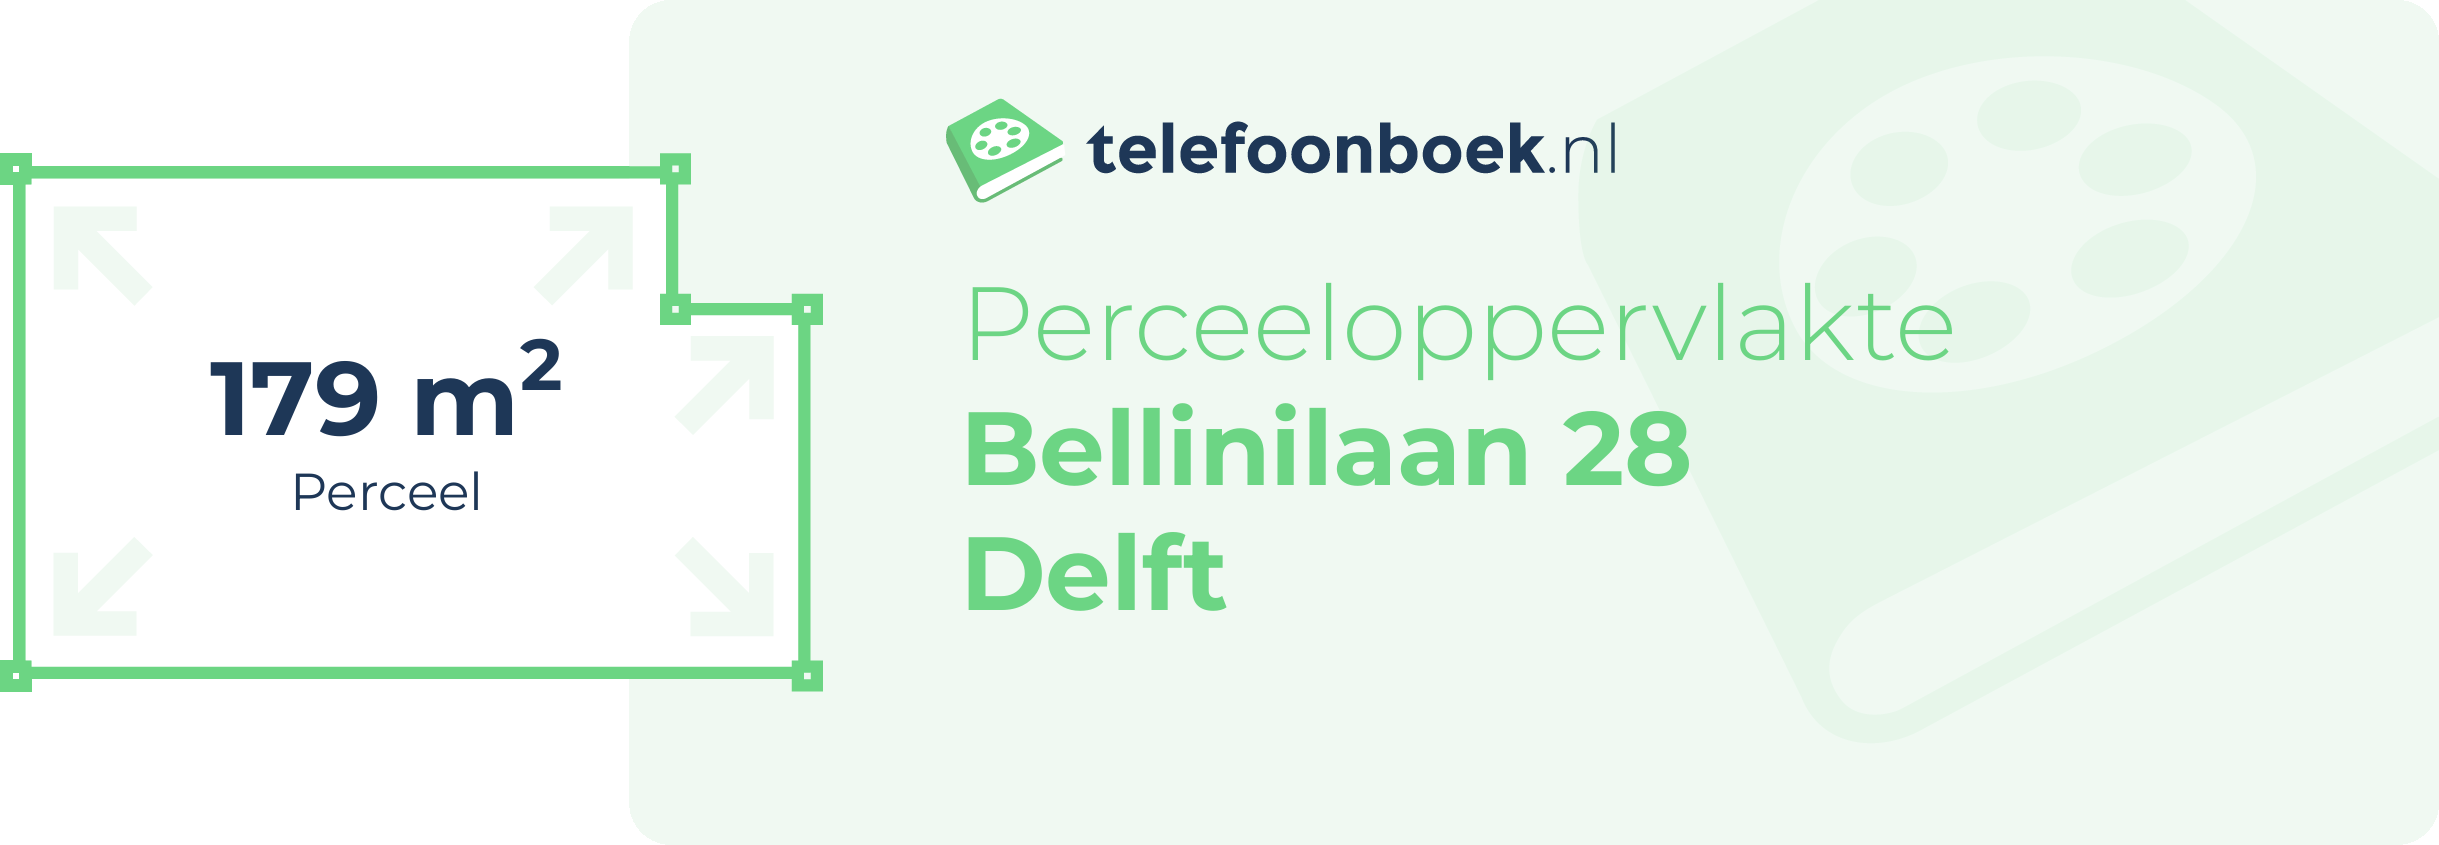 Perceeloppervlakte Bellinilaan 28 Delft